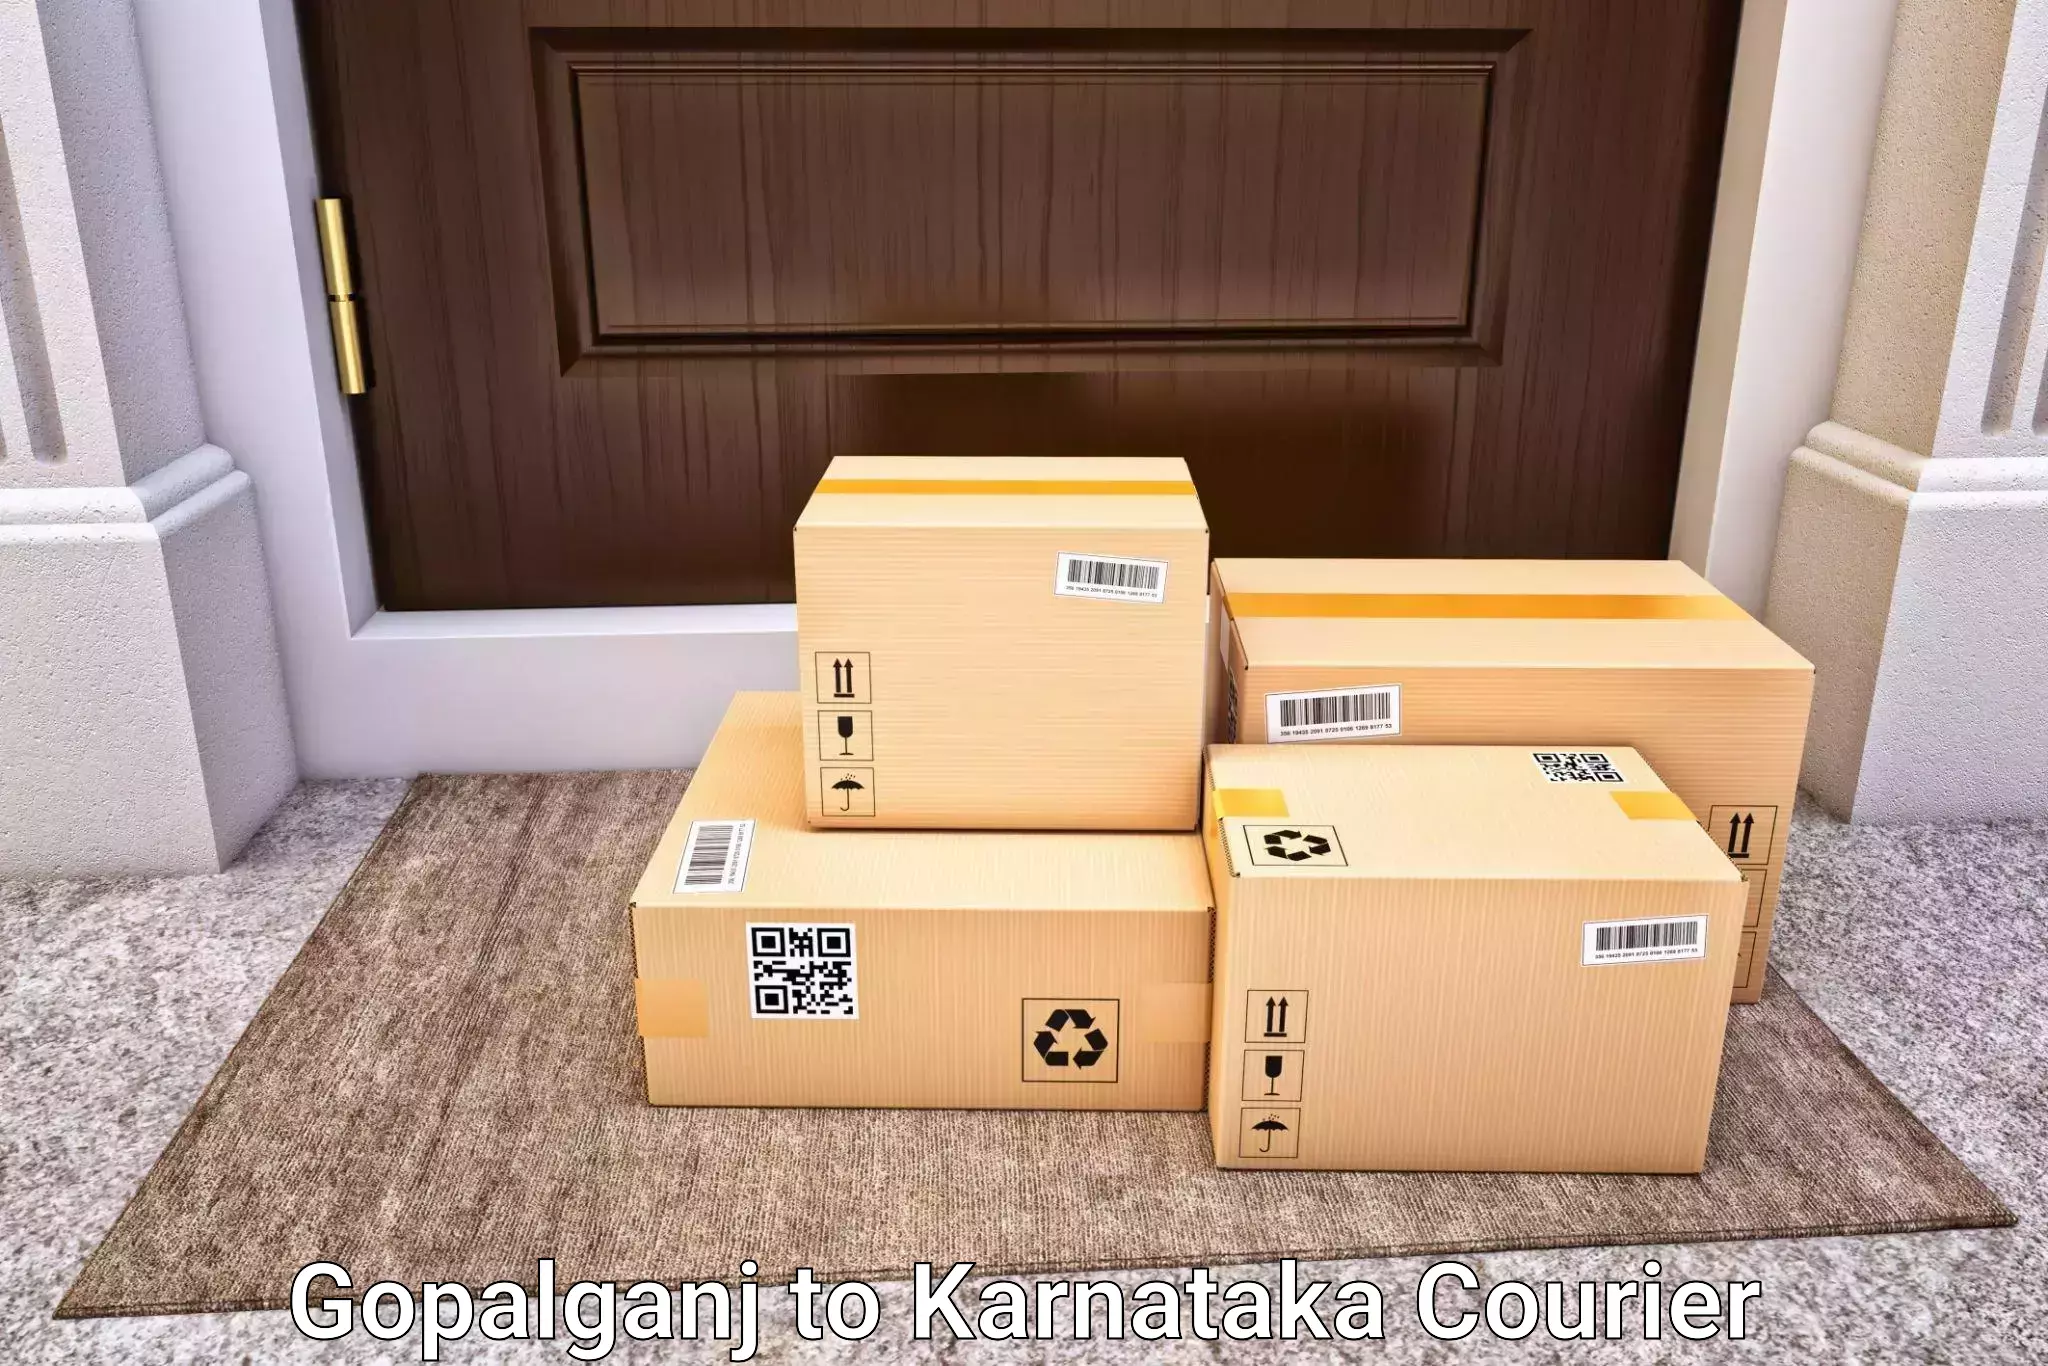 Nationwide luggage courier Gopalganj to Kalasa